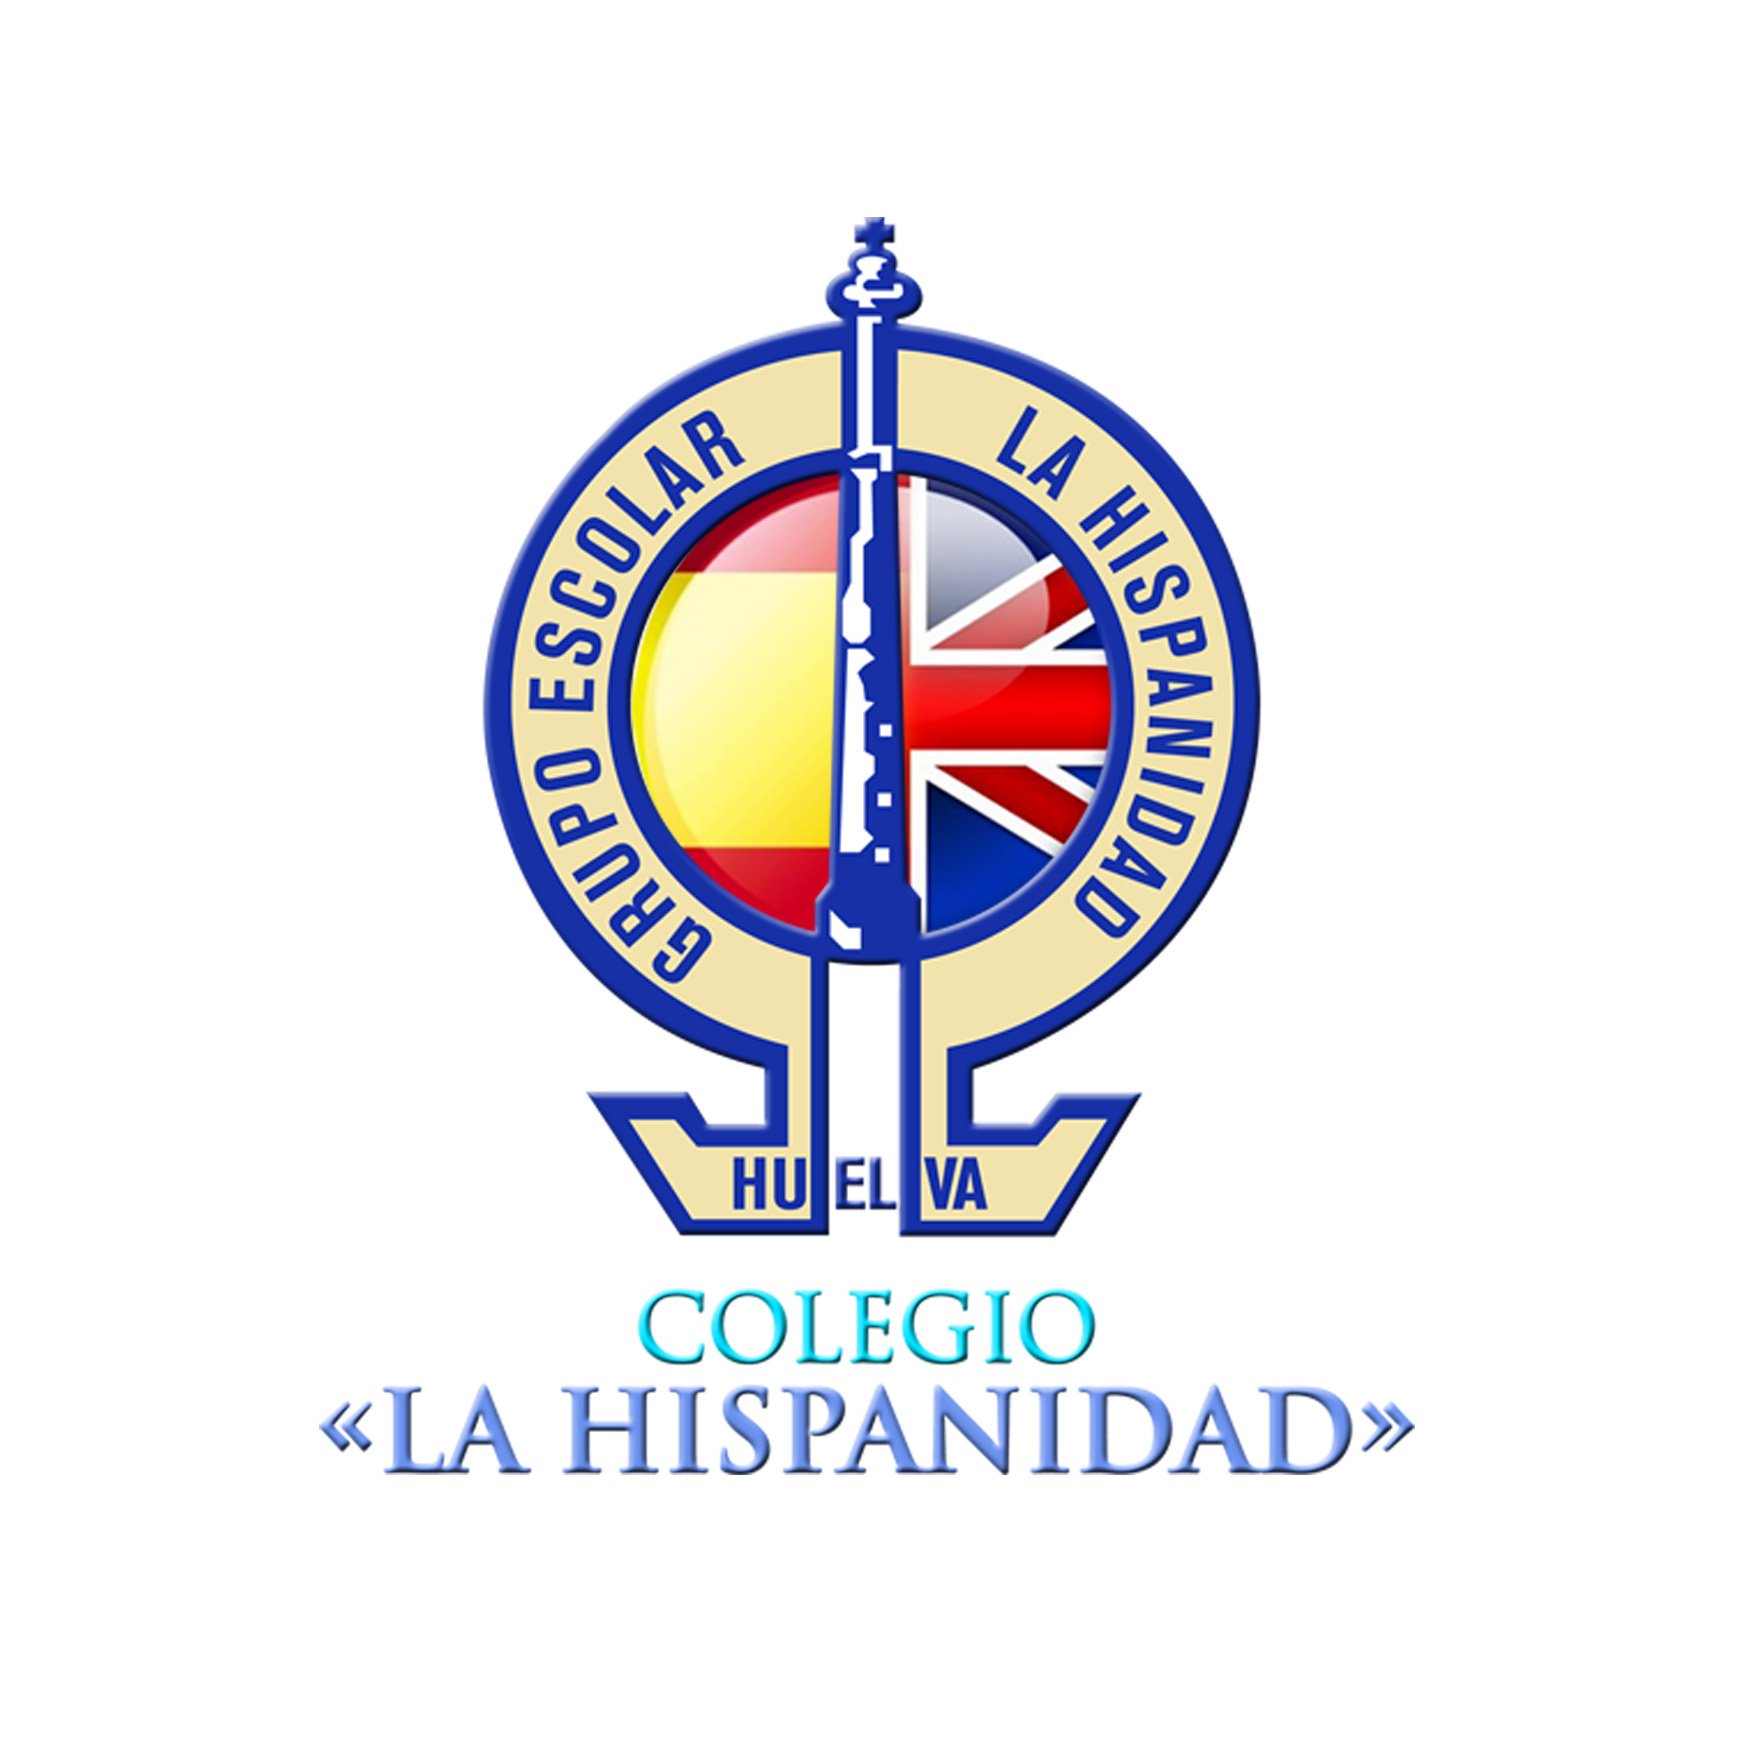 Desde 1973, Escuela de Valores. La Hispanidad, Huelva.